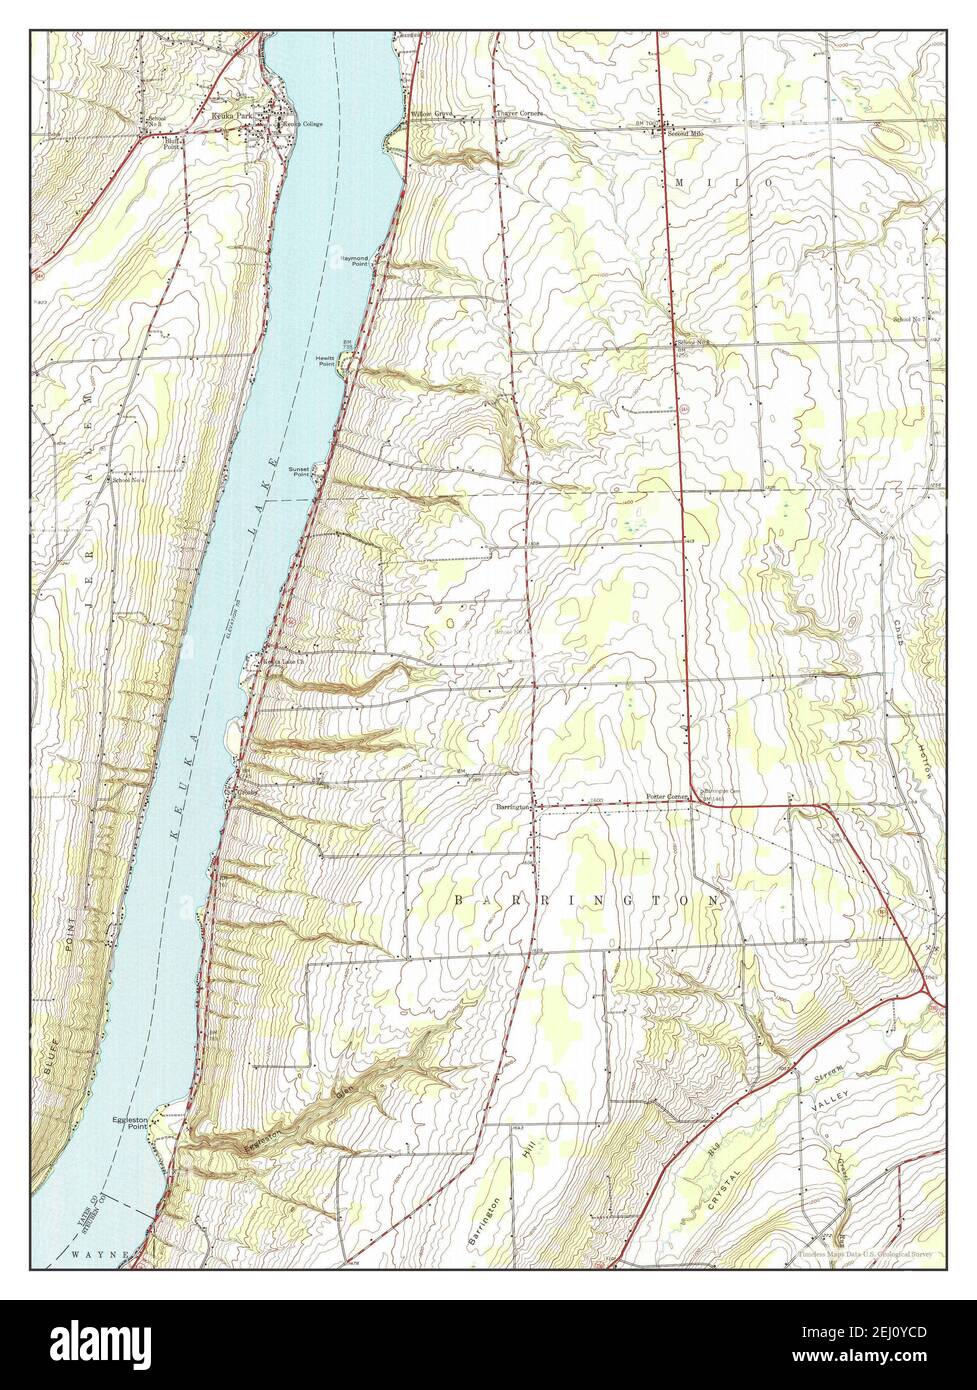 Keuka Park, Nueva York, MAP 1942, 1:24000, Estados Unidos de América por Timeless Maps, data U.S. Geological Survey Foto de stock